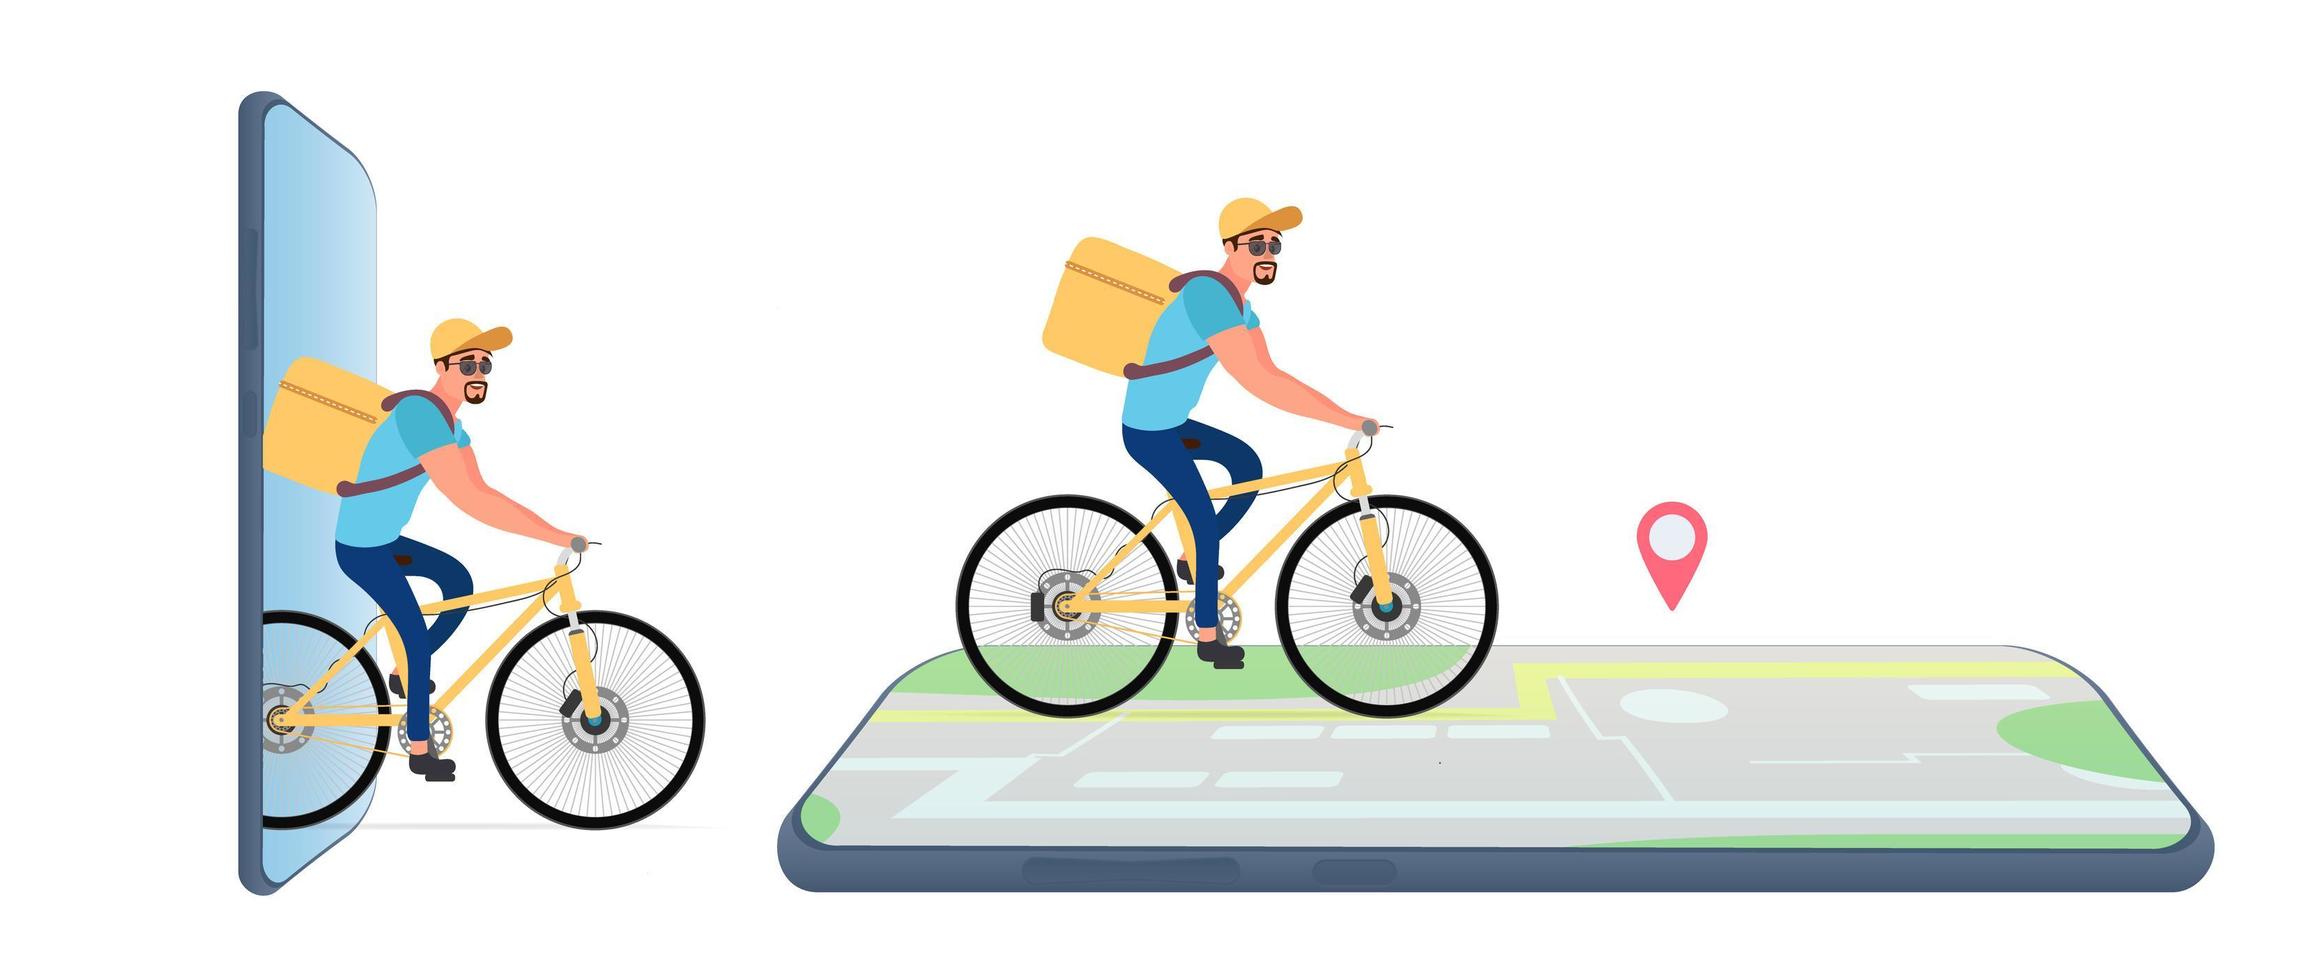 Essenslieferung mit dem Fahrrad. Radfahrer mit einem gelben Rucksack auf einem Fahrrad. Karte mit einer Markierung. Lieferkonzept für Smartphone-Bestellungen. isoliert. Vektor